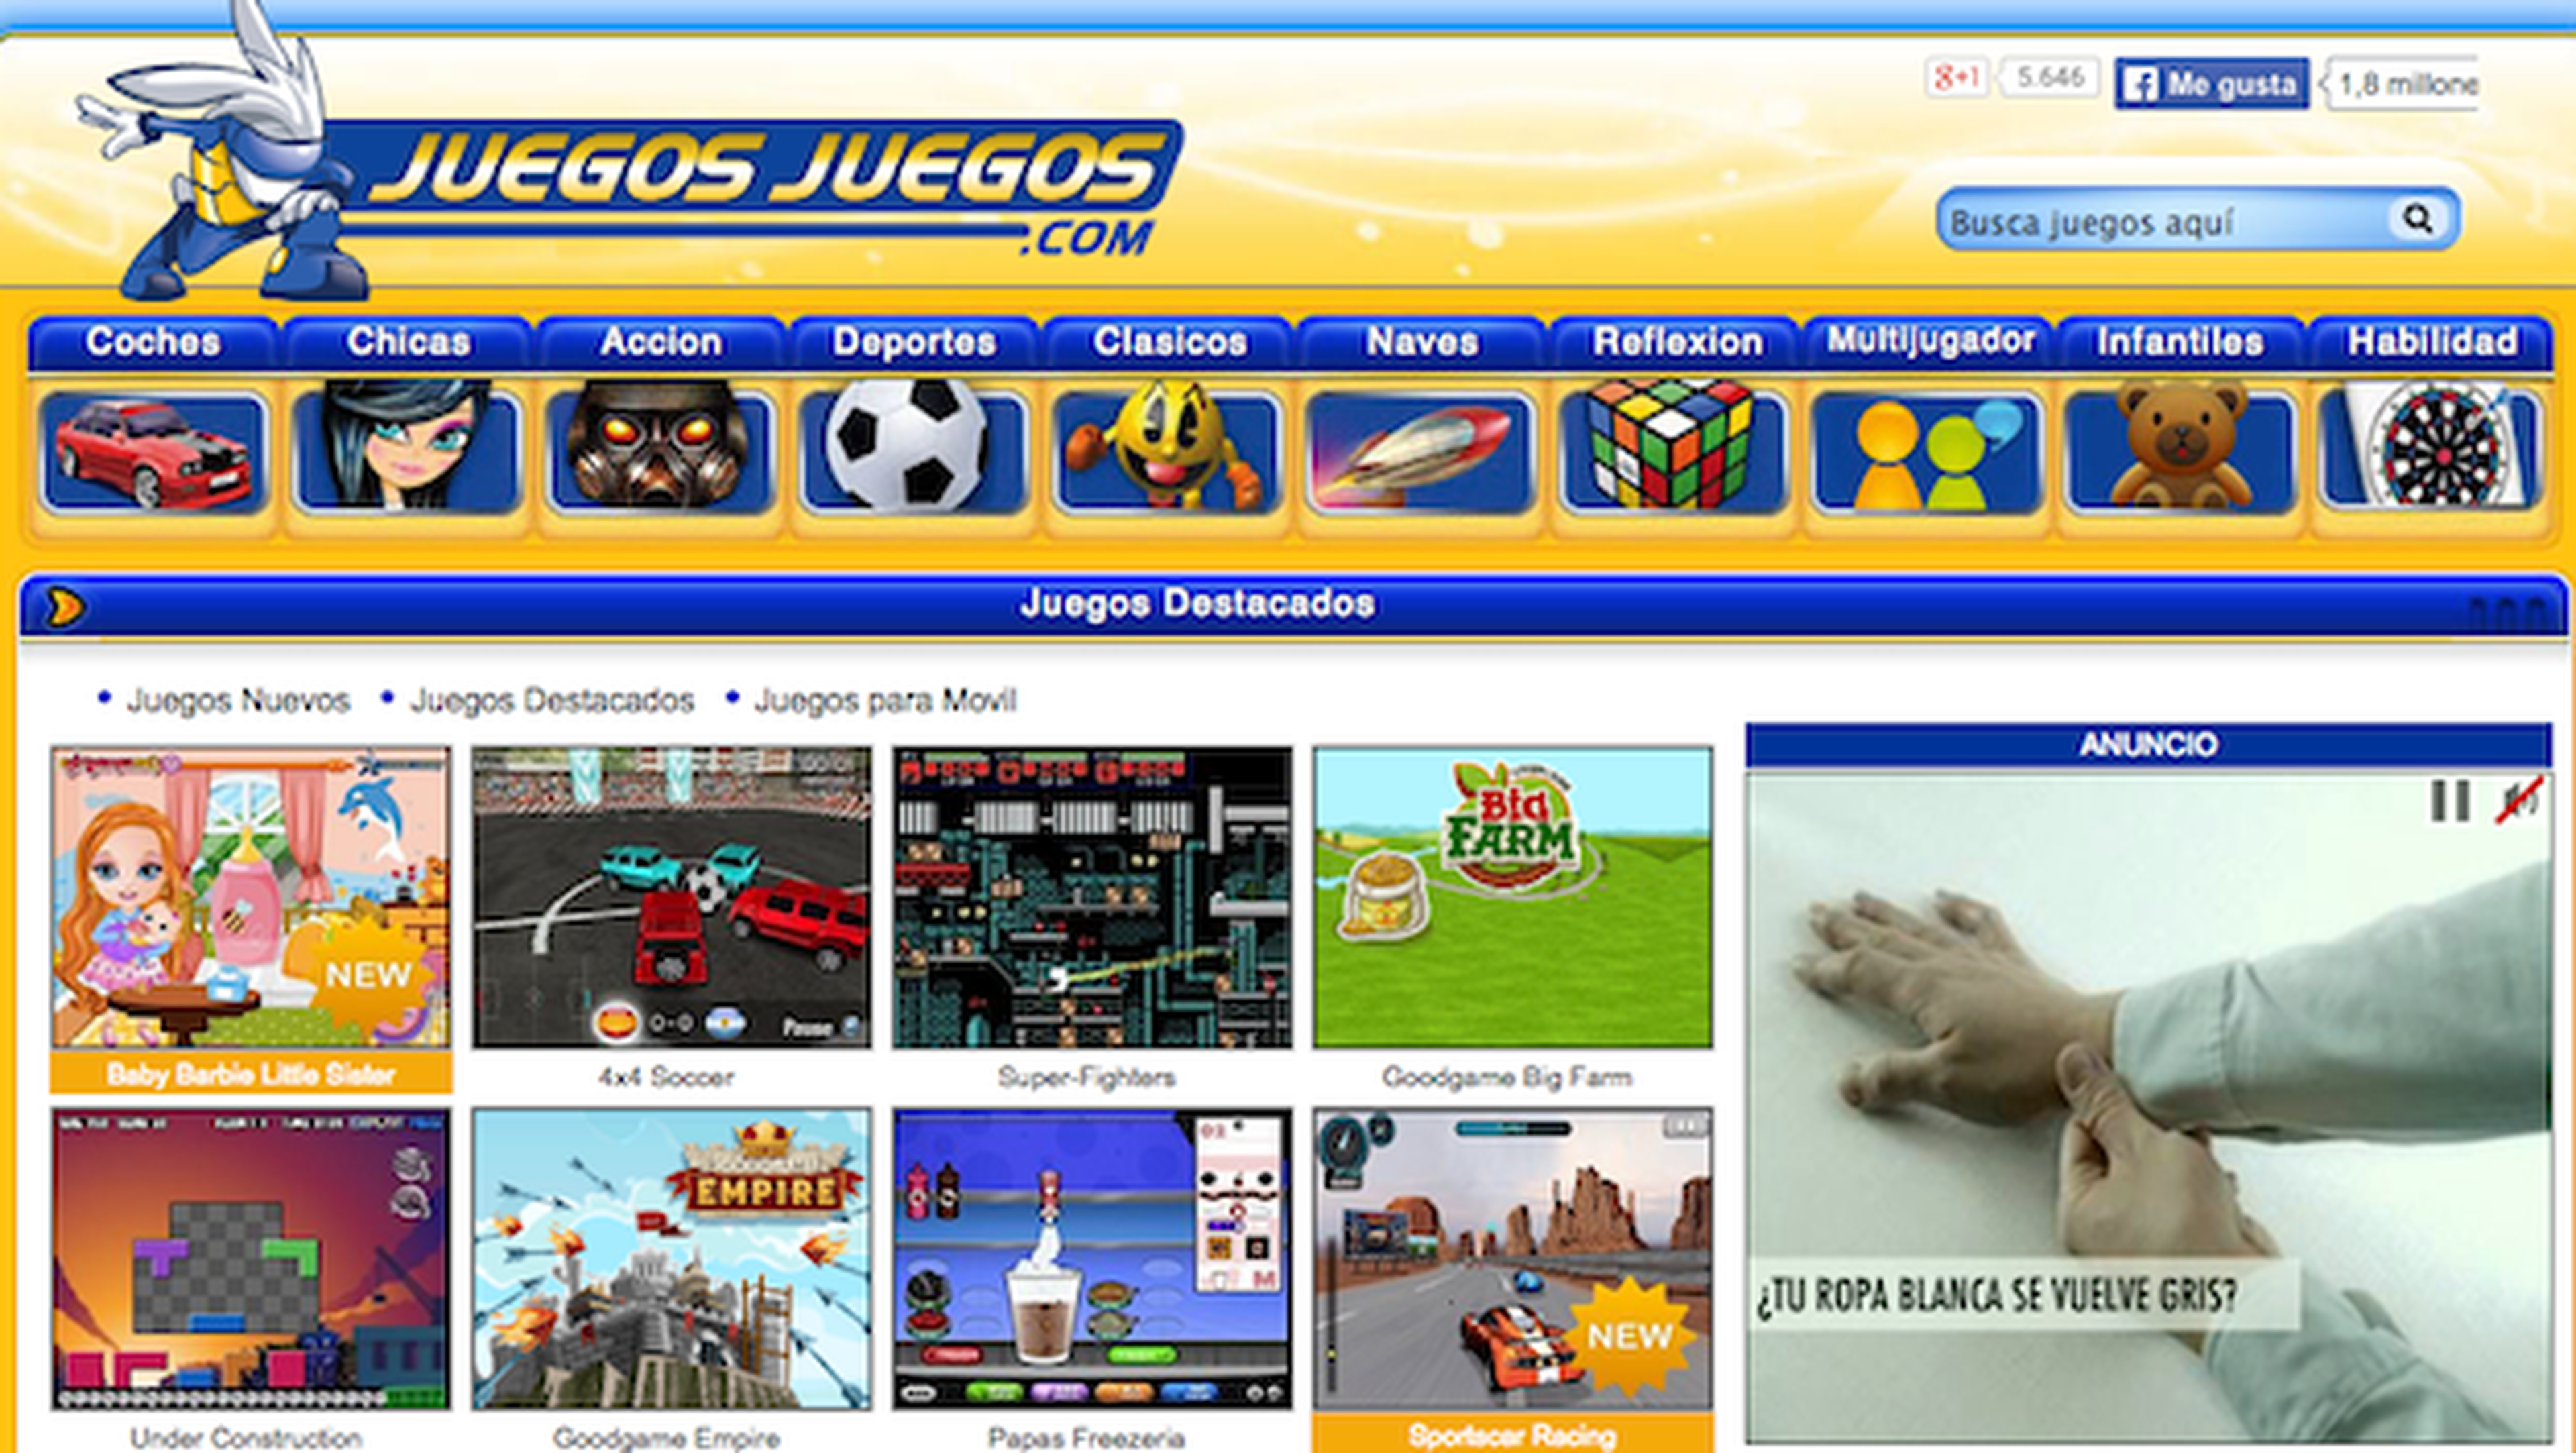 Juegos - Juegos Gratis Online en Minijuegos